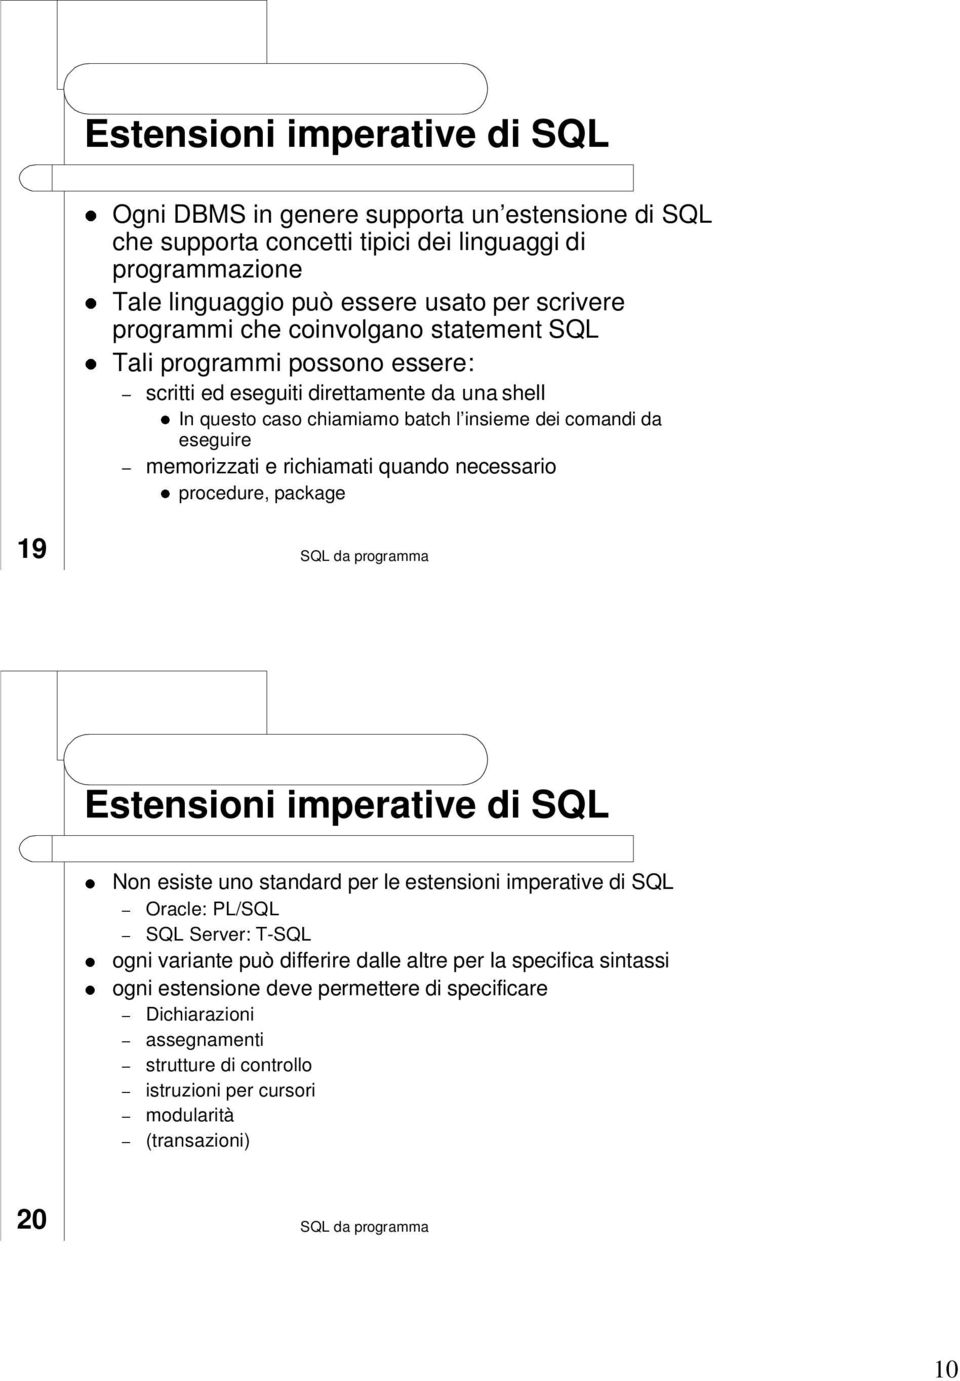 memorizzati e richiamati quando necessario procedure, package 19 Estensioni imperative di SQL Non esiste uno standard per le estensioni imperative di SQL Oracle: PL/SQL SQL Server: T-SQL ogni